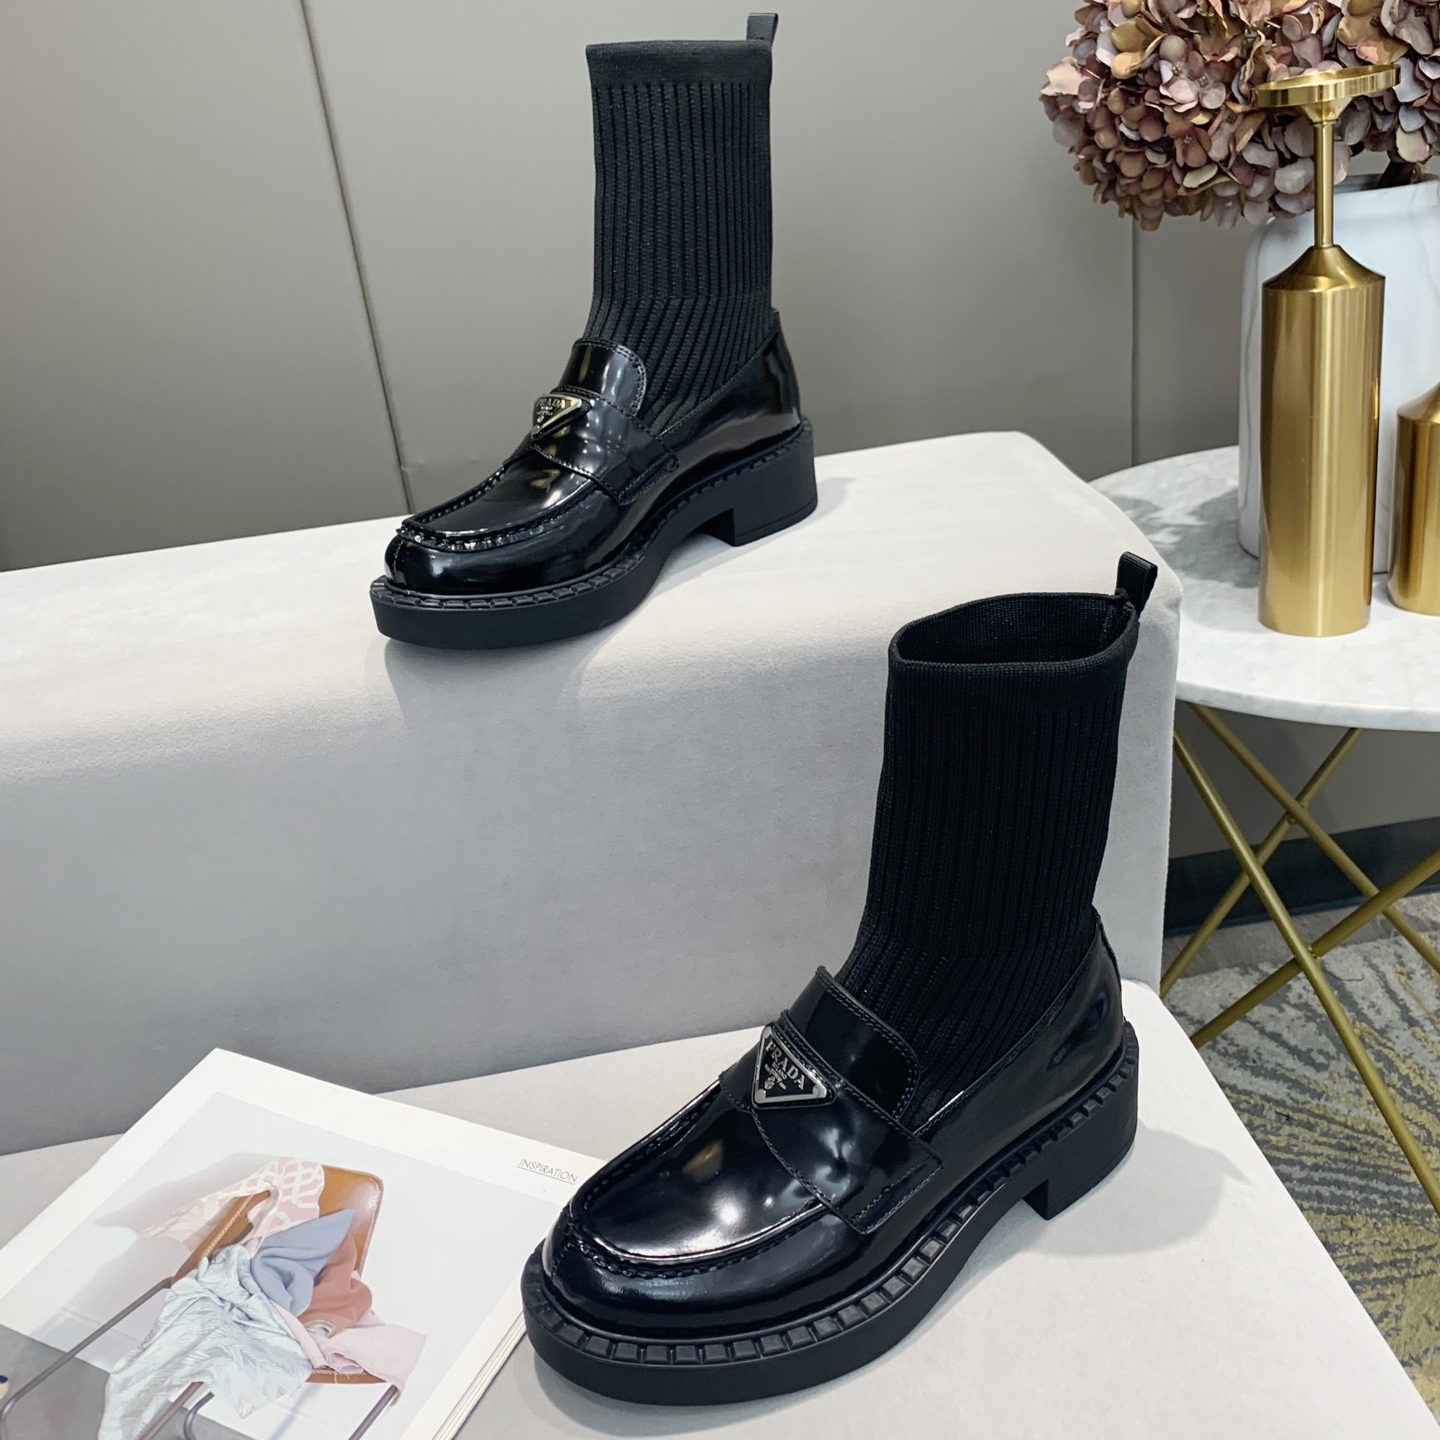 Godt sælgende strømpe Støvler CalvinLuo mode luksus berømte mærke Milan Fashion Week damemærkesko og falske designersko også højkvalitets mærkehæle